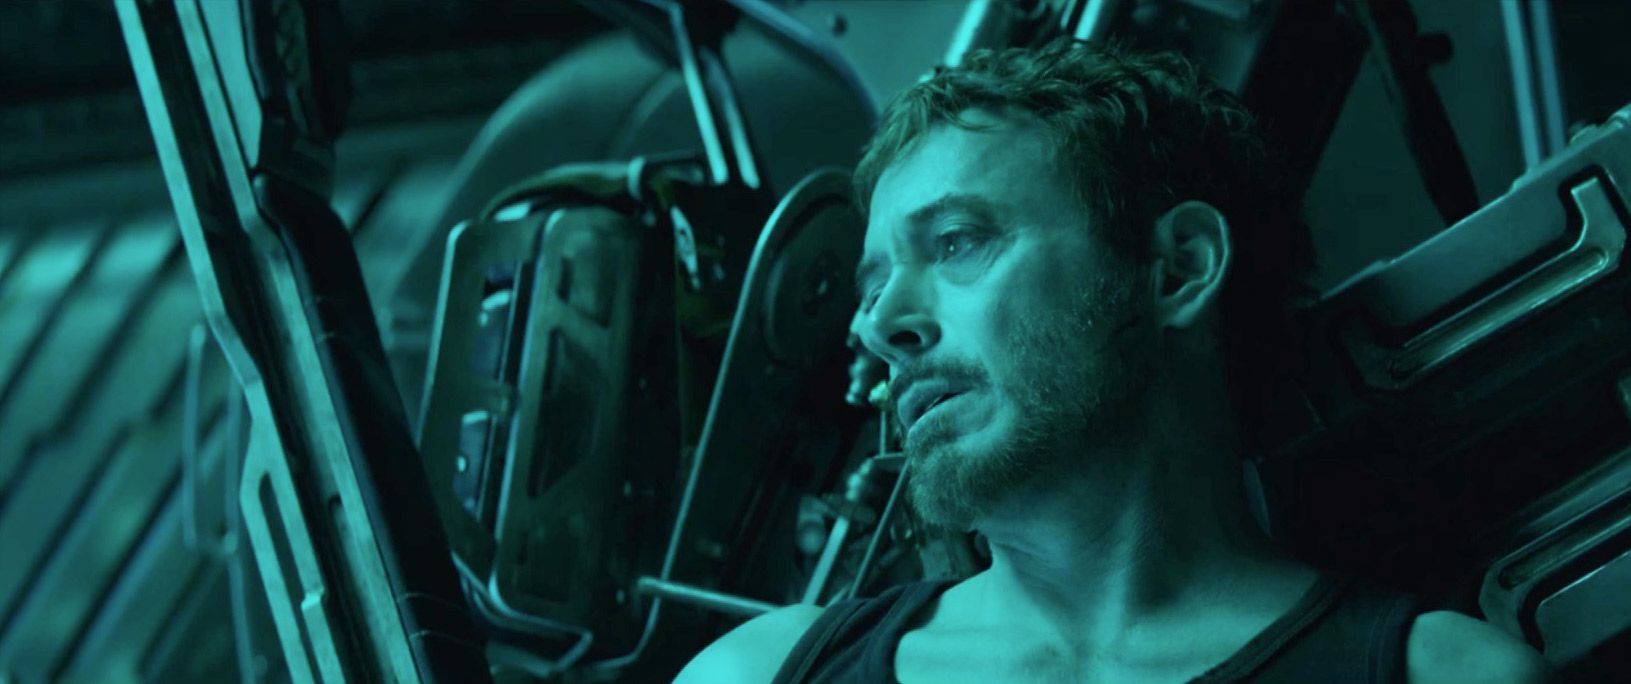 Robert Downey Jr., Iron Man, Avengers: Endgame, Marvel, Official Trailer